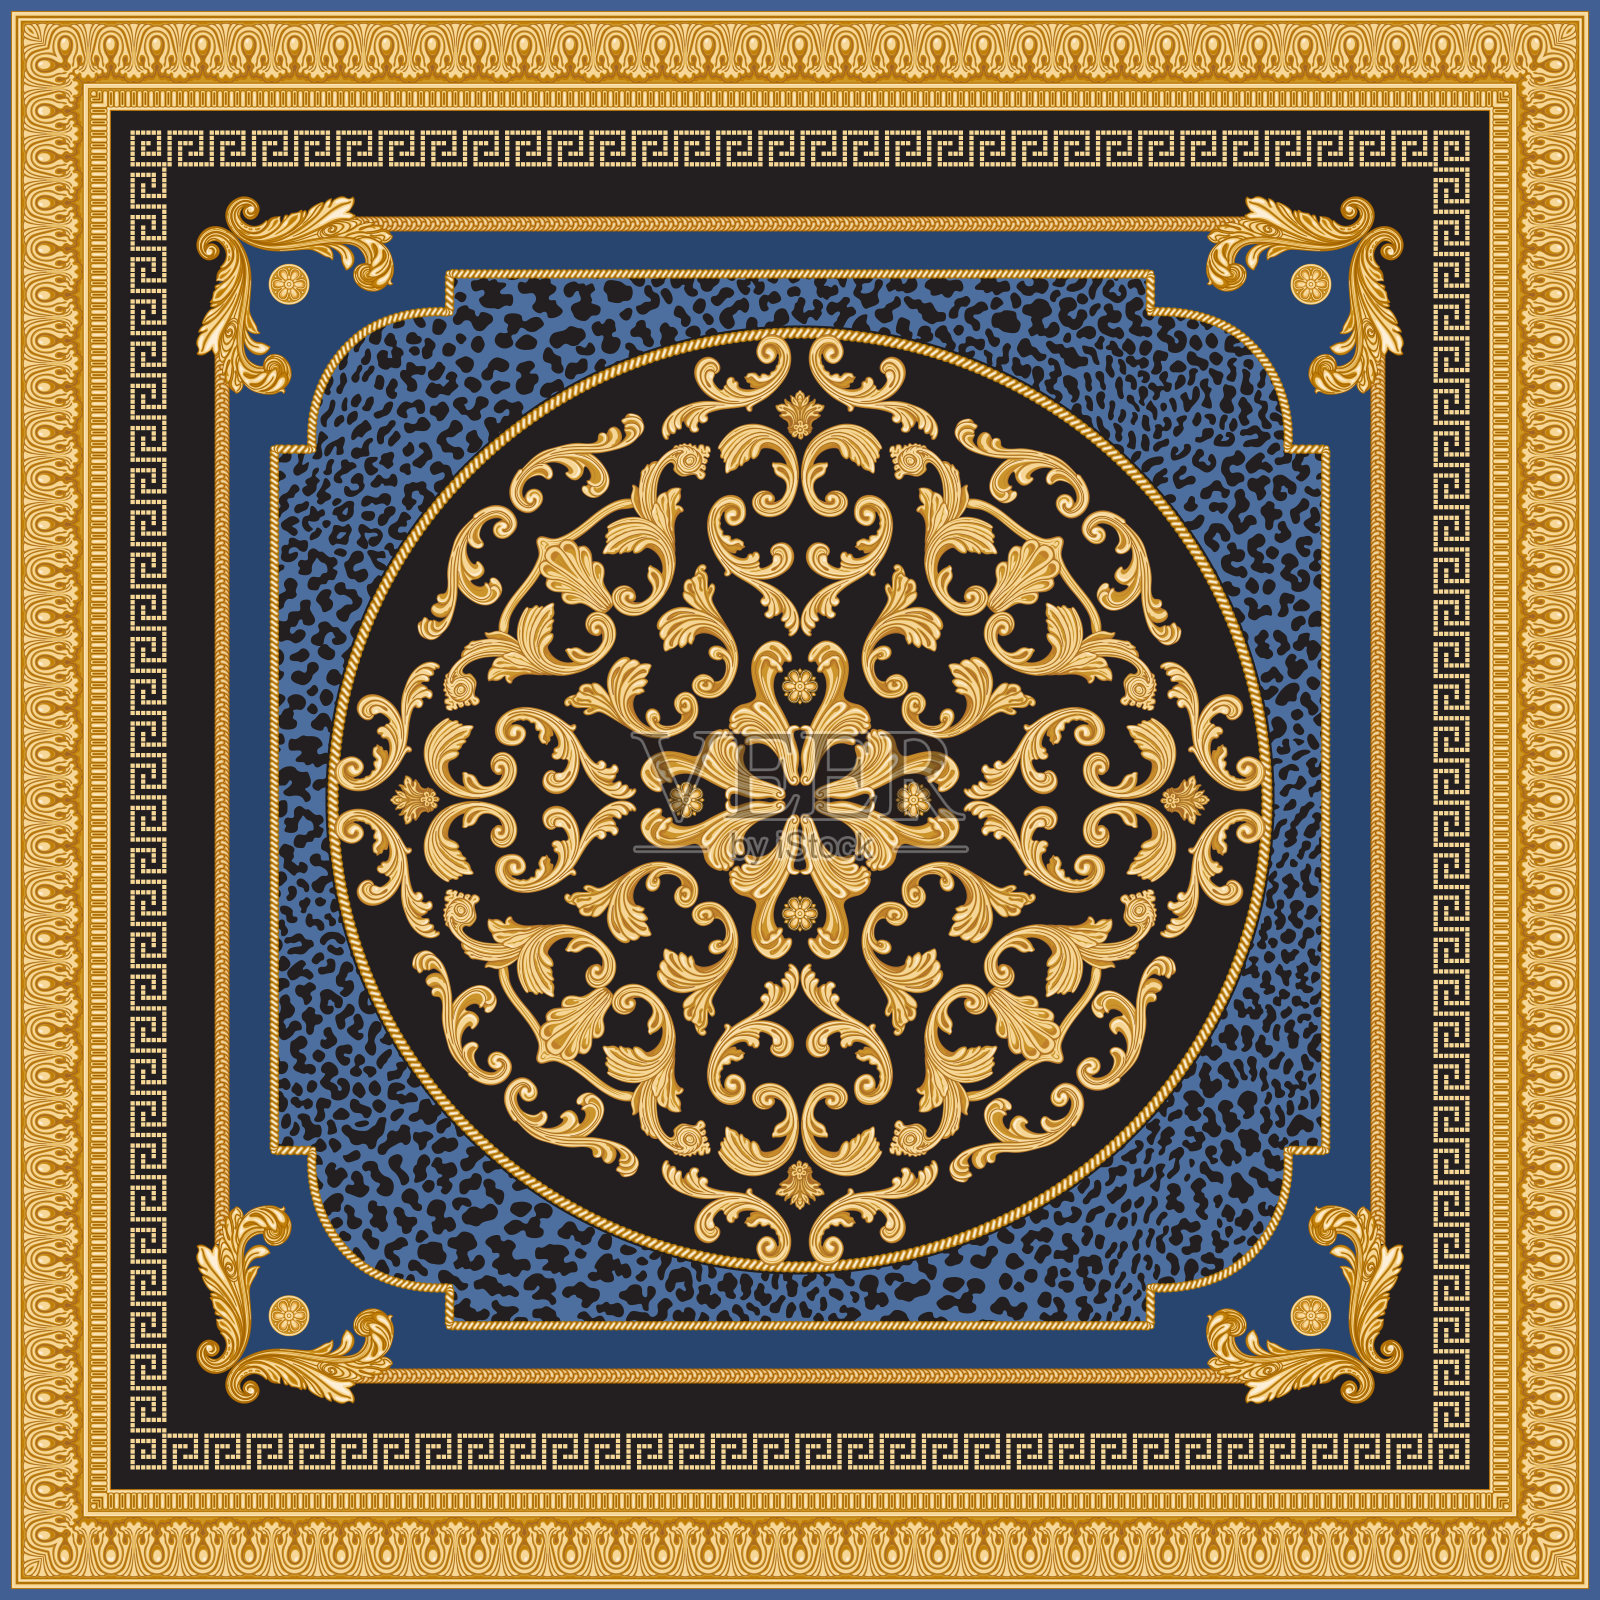 巴洛克卷轴玫瑰结，黄金希腊的关键图案，蜿蜒的边界frieze，雕刻框架上一个黑色和蓝色豹子皮肤斑点的背景。插画图片素材